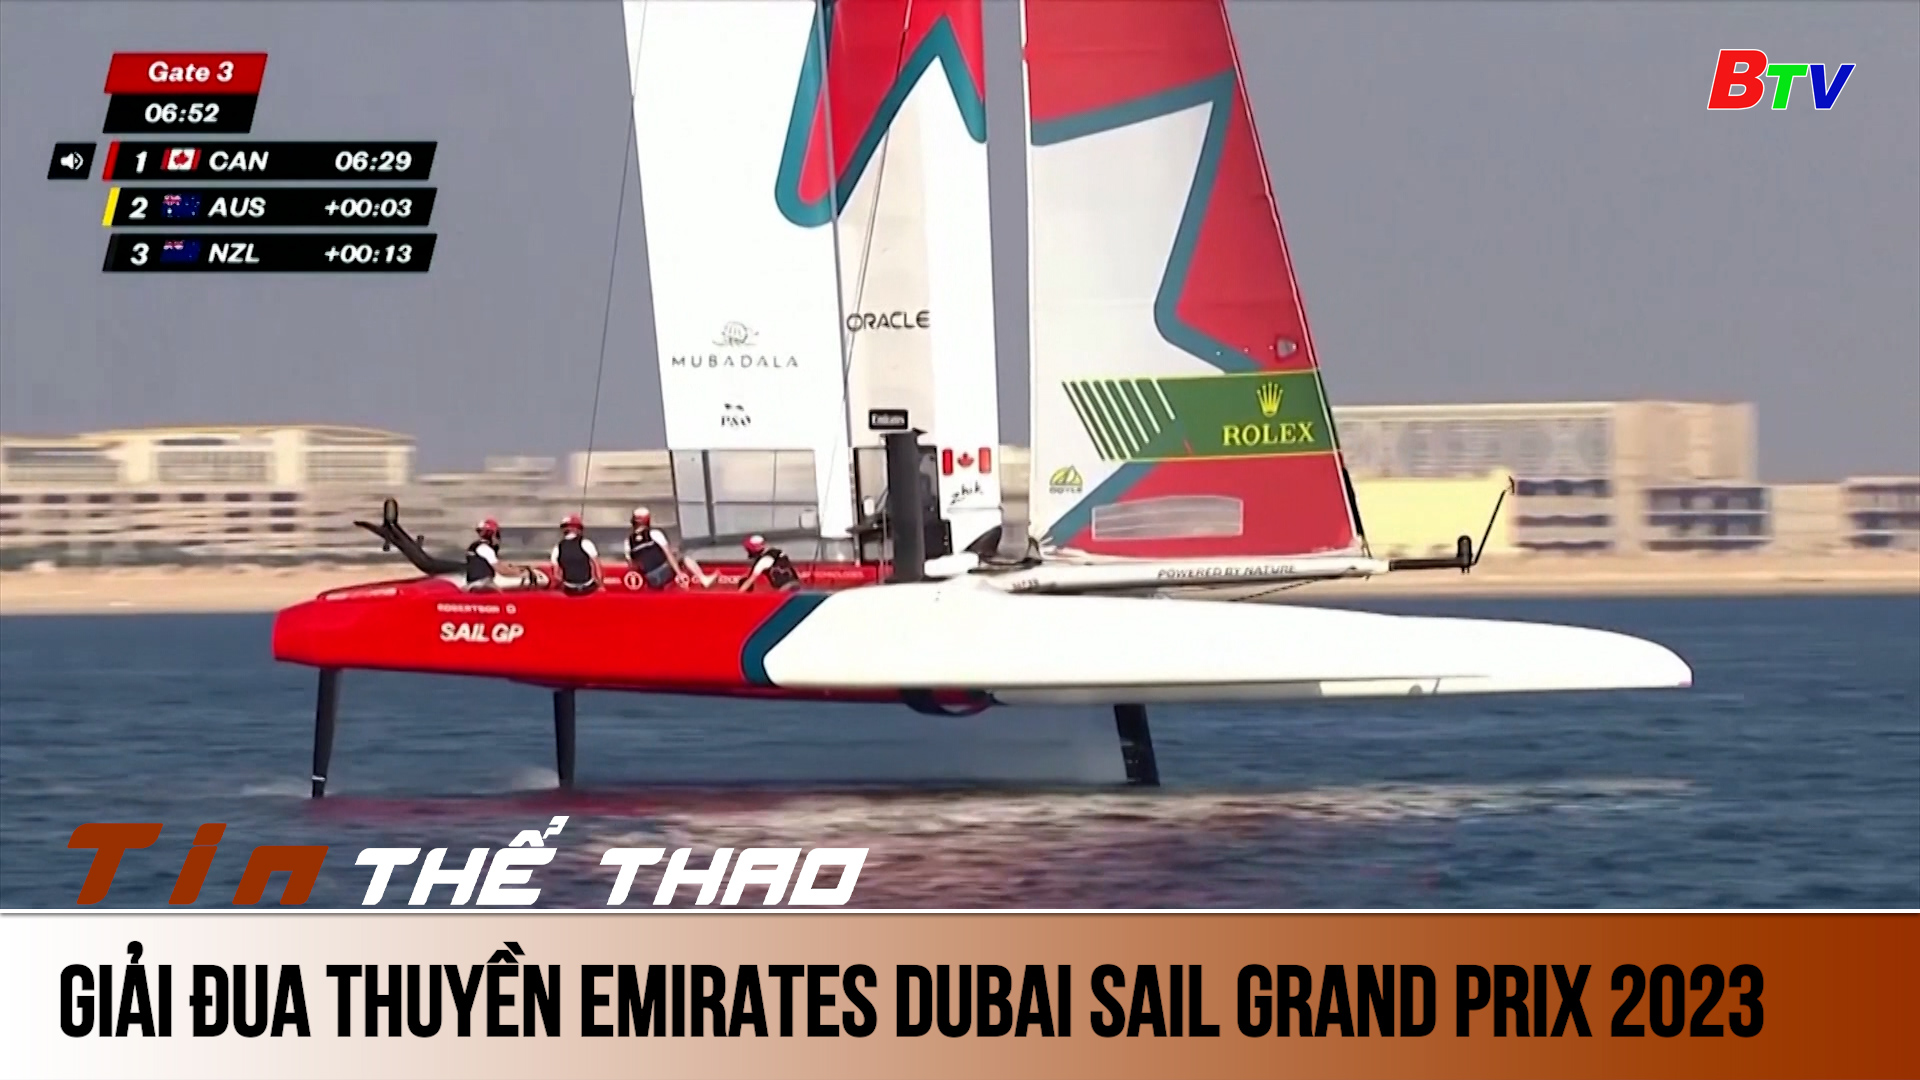 Giải đua thuyền Emirates Dubai Sail Grand Prix 2023 | Tin Thể thao 24h